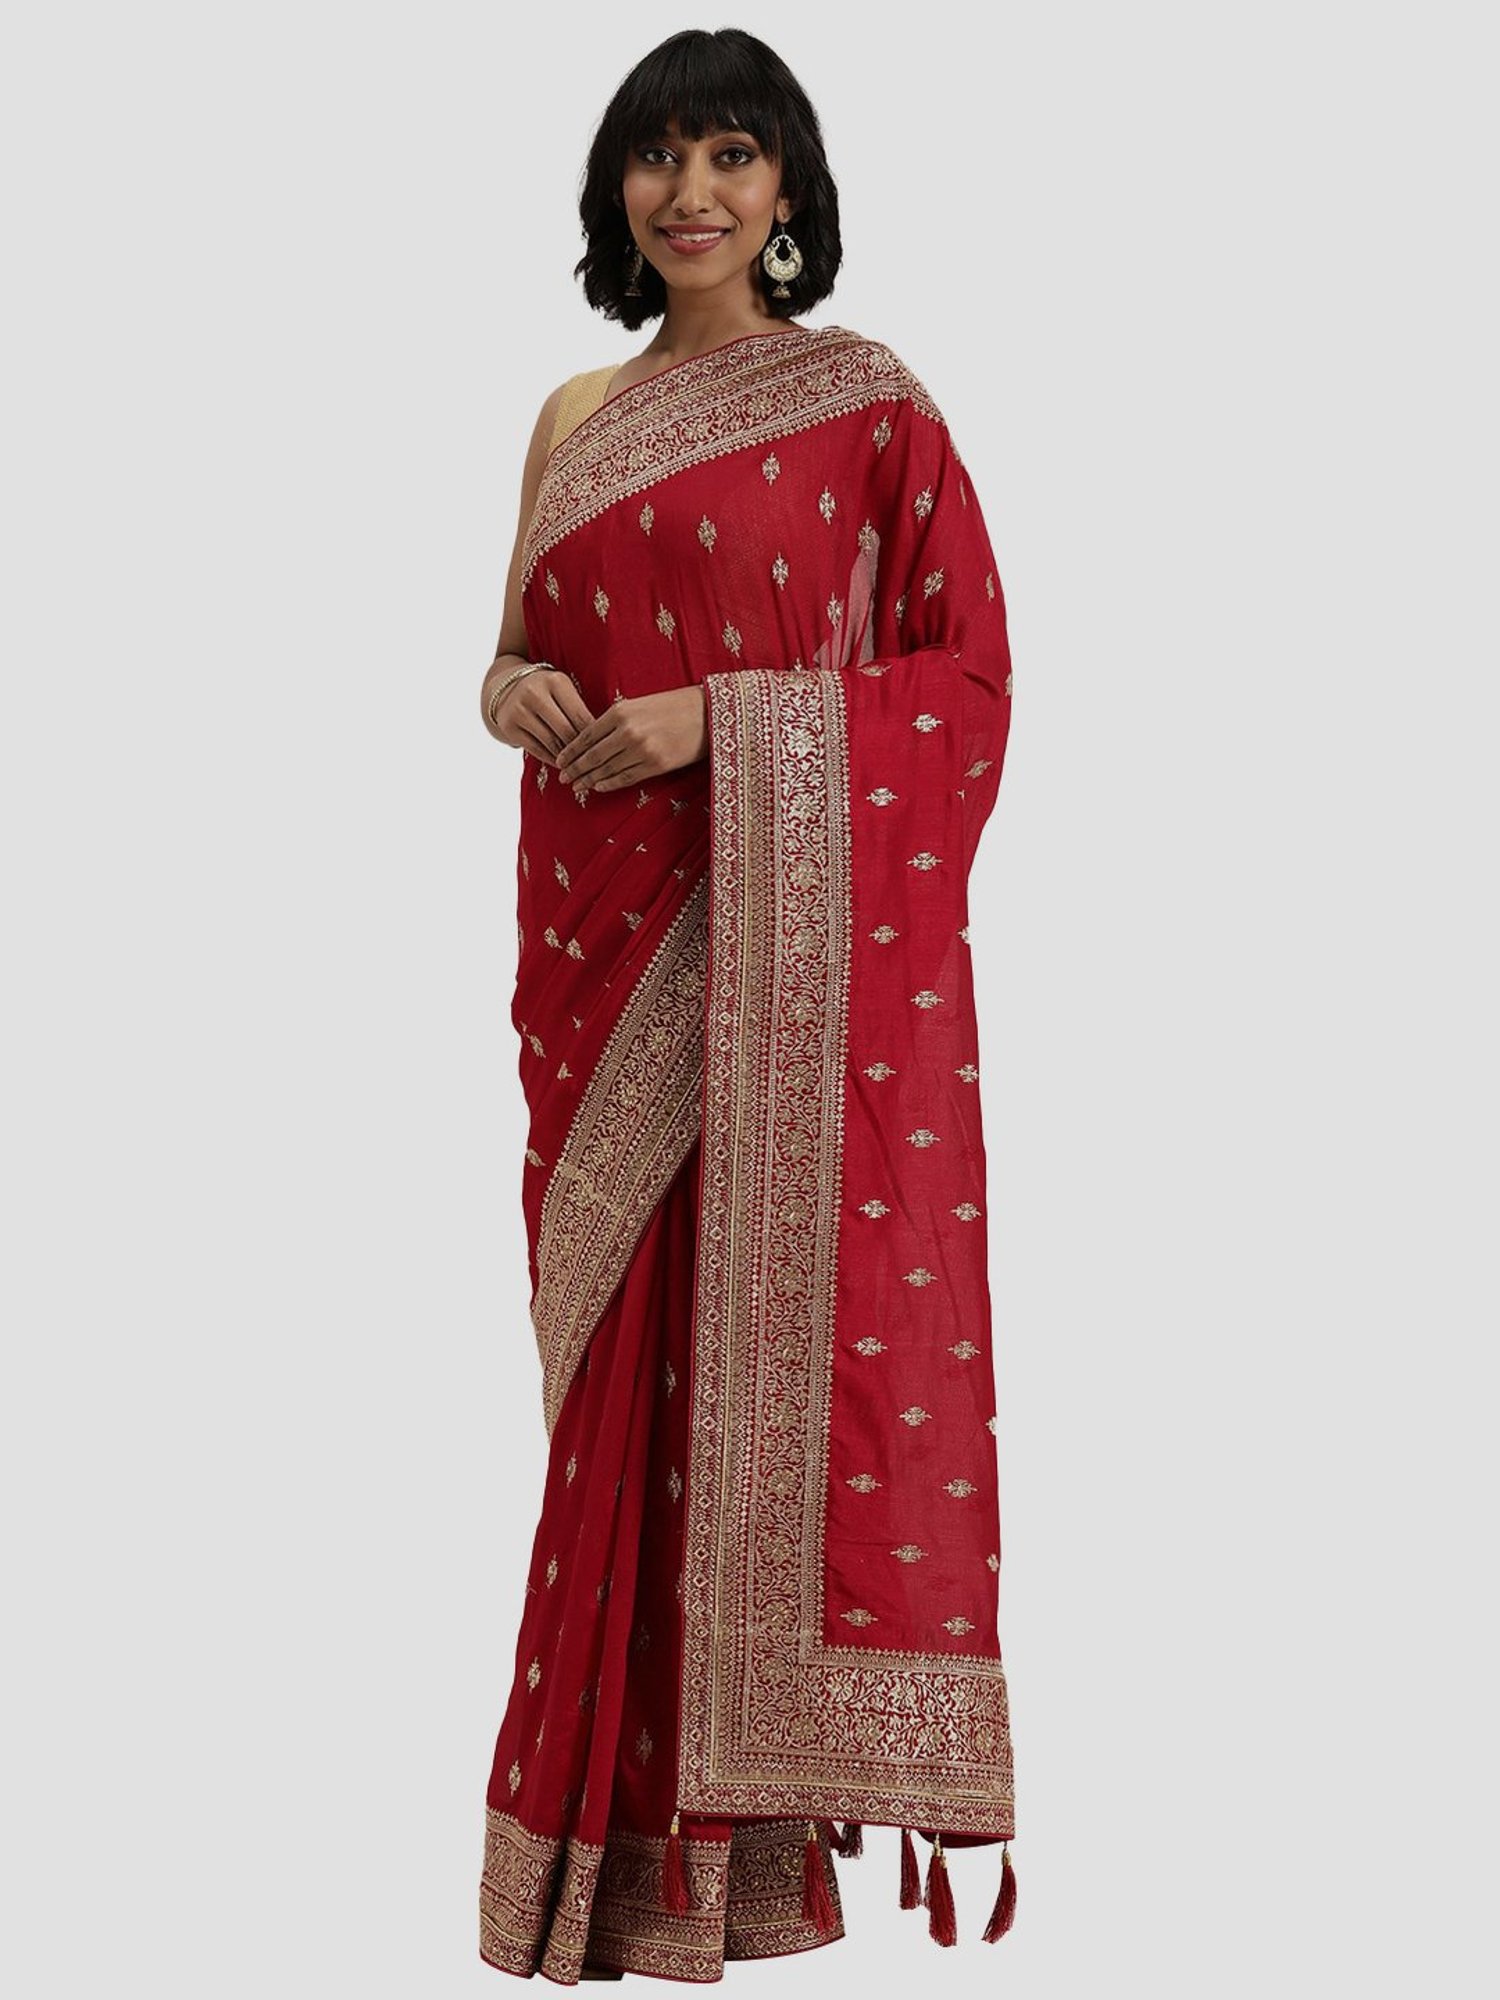 Saree - Buy Best Sarees for Women Online @Mohey | Saree, Saree designs,  Stylish sarees